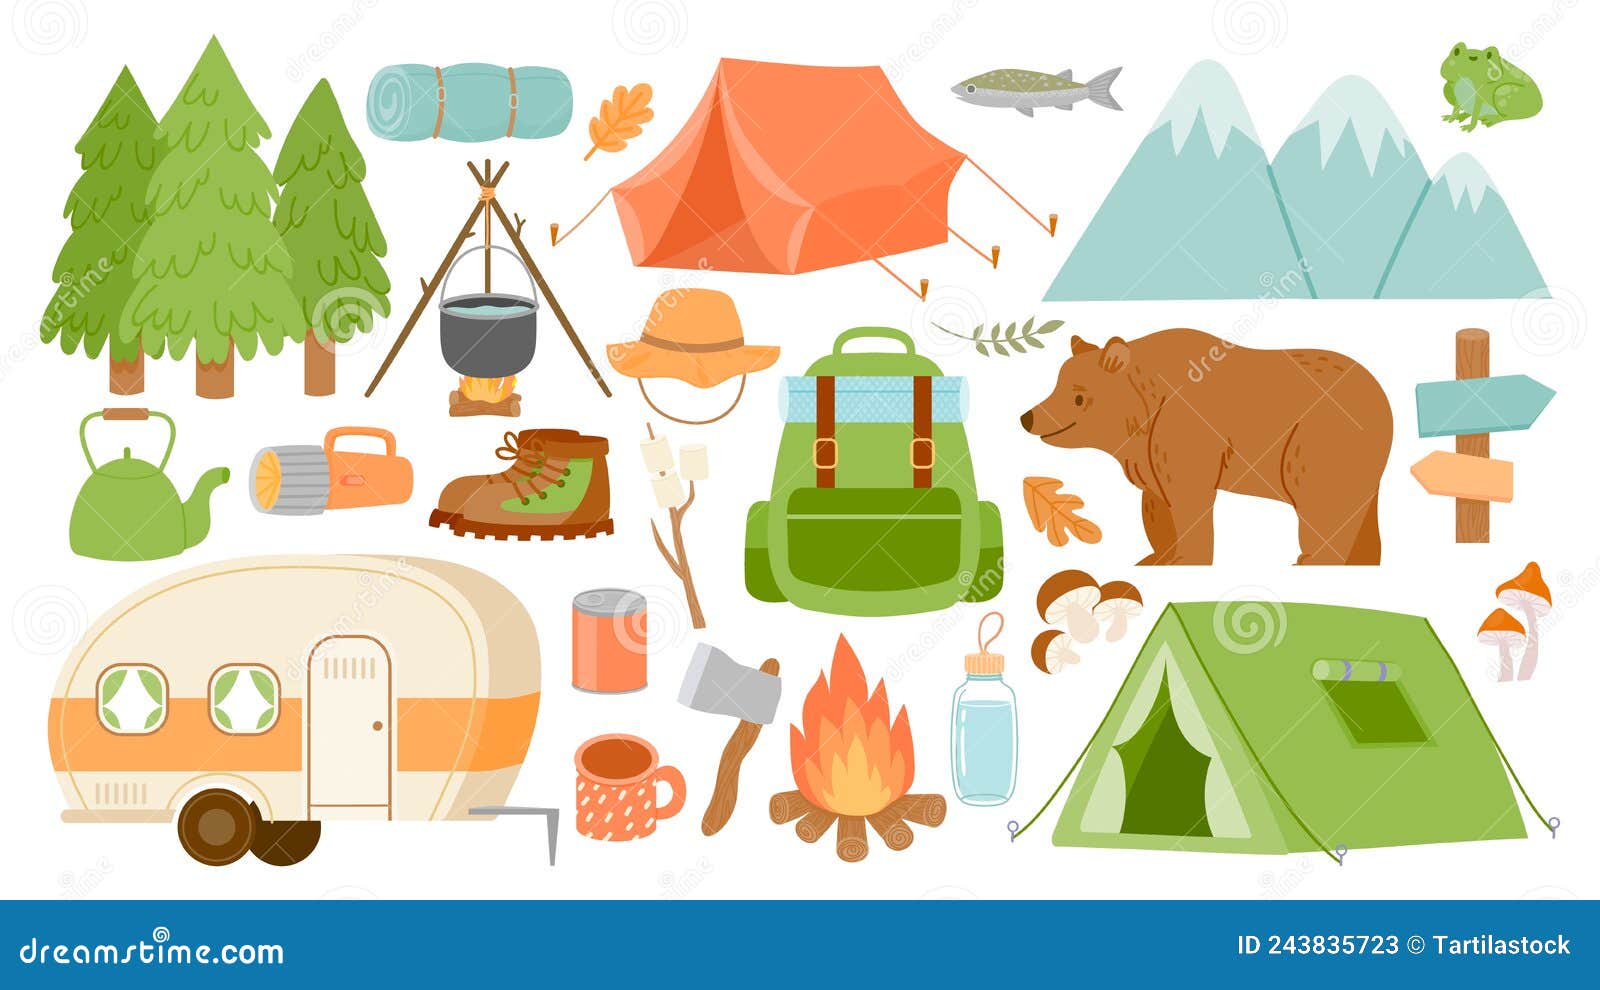 Equipement et Materiel de Survie, camping, campement, randonnée